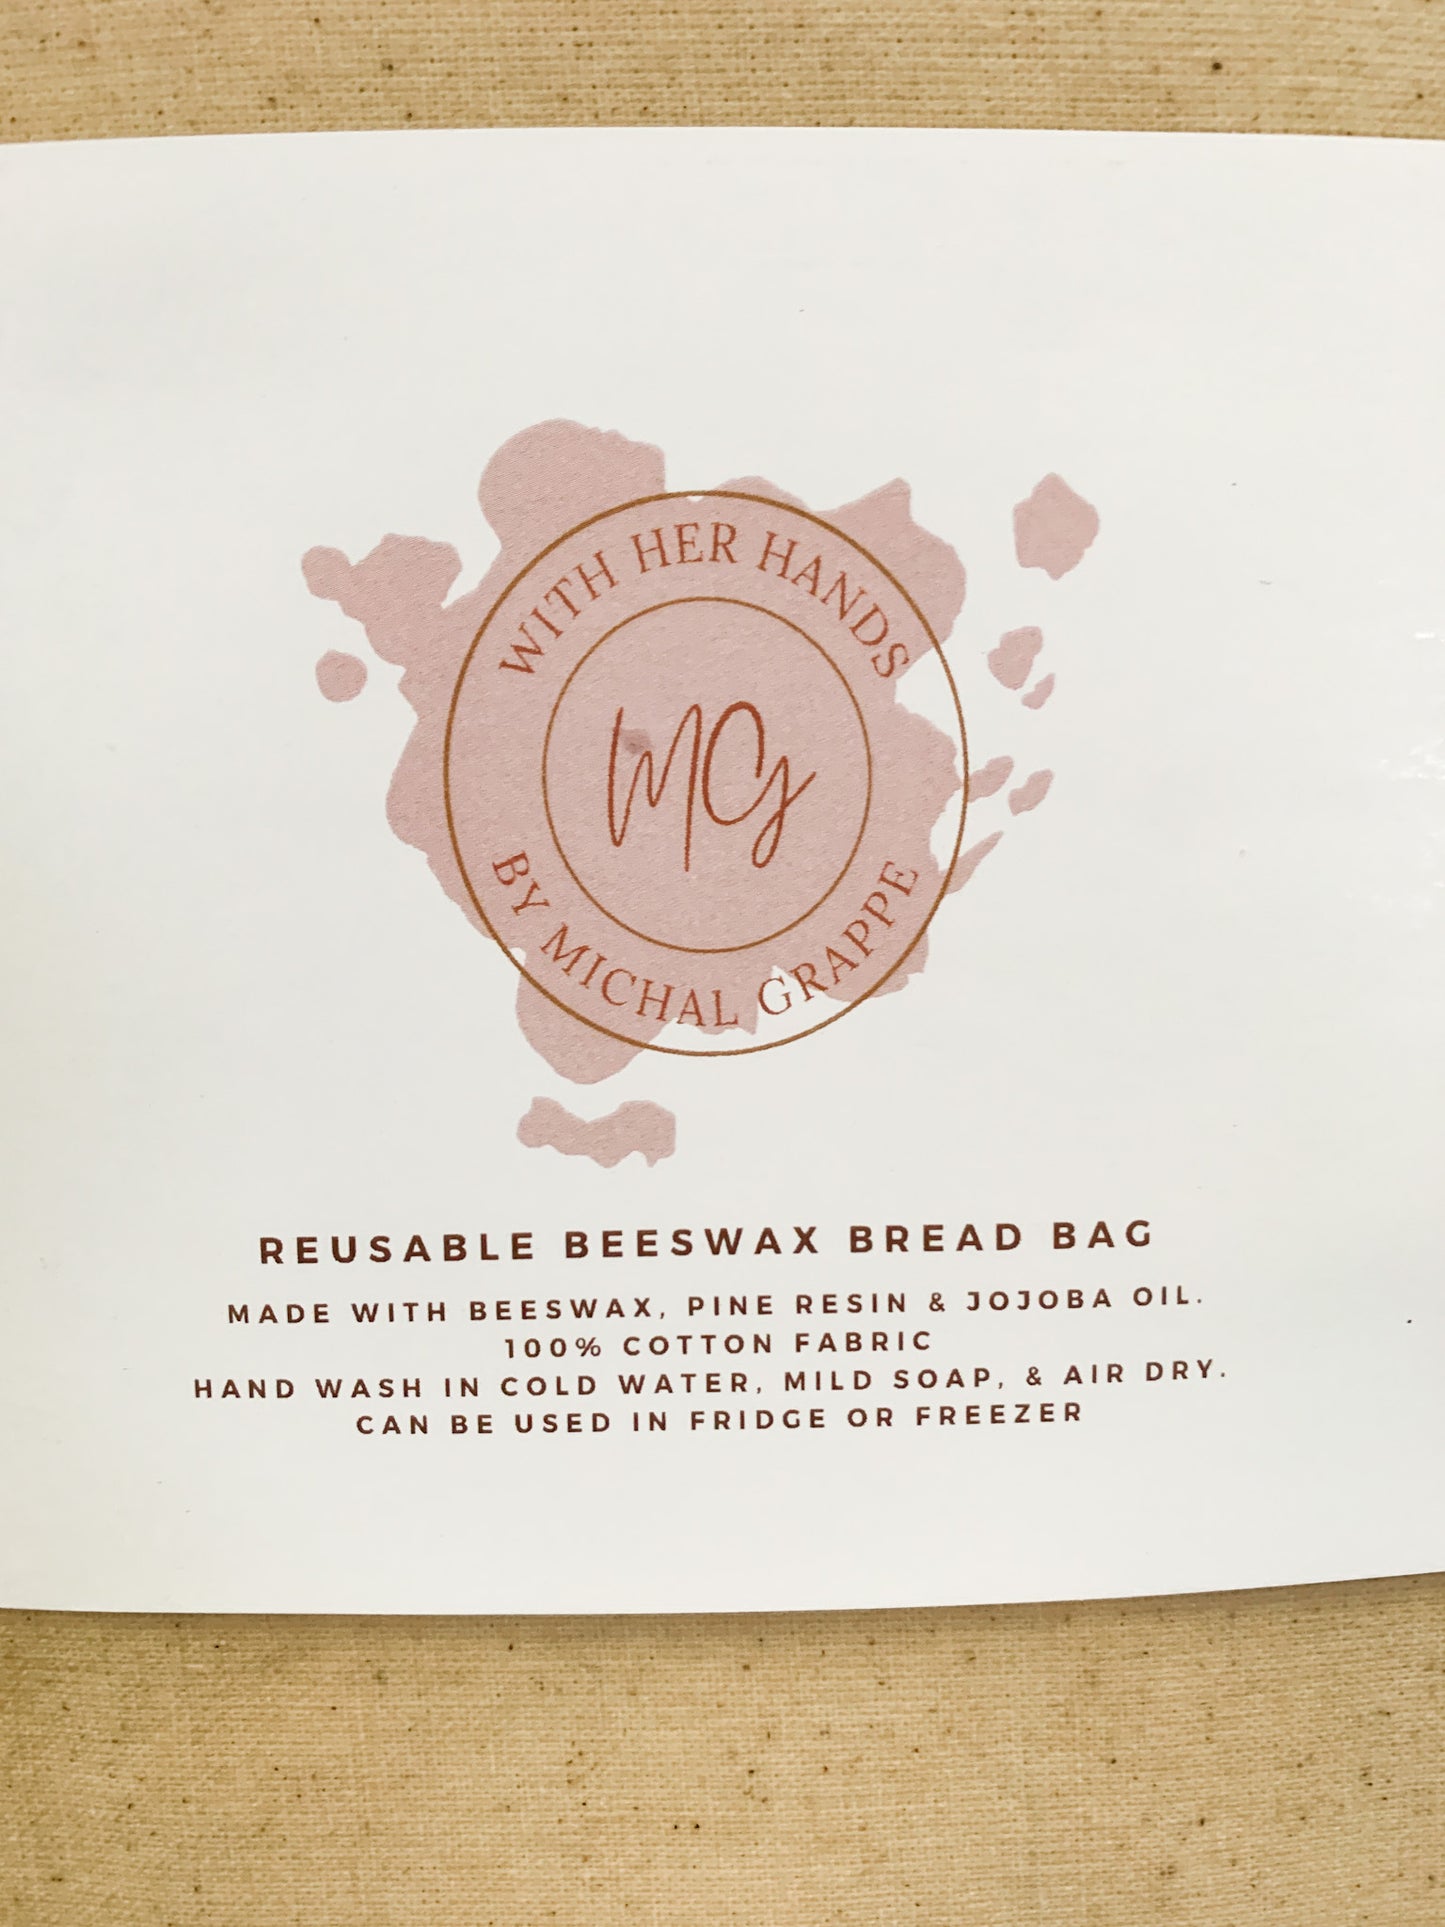 Beeswax Bread Bag